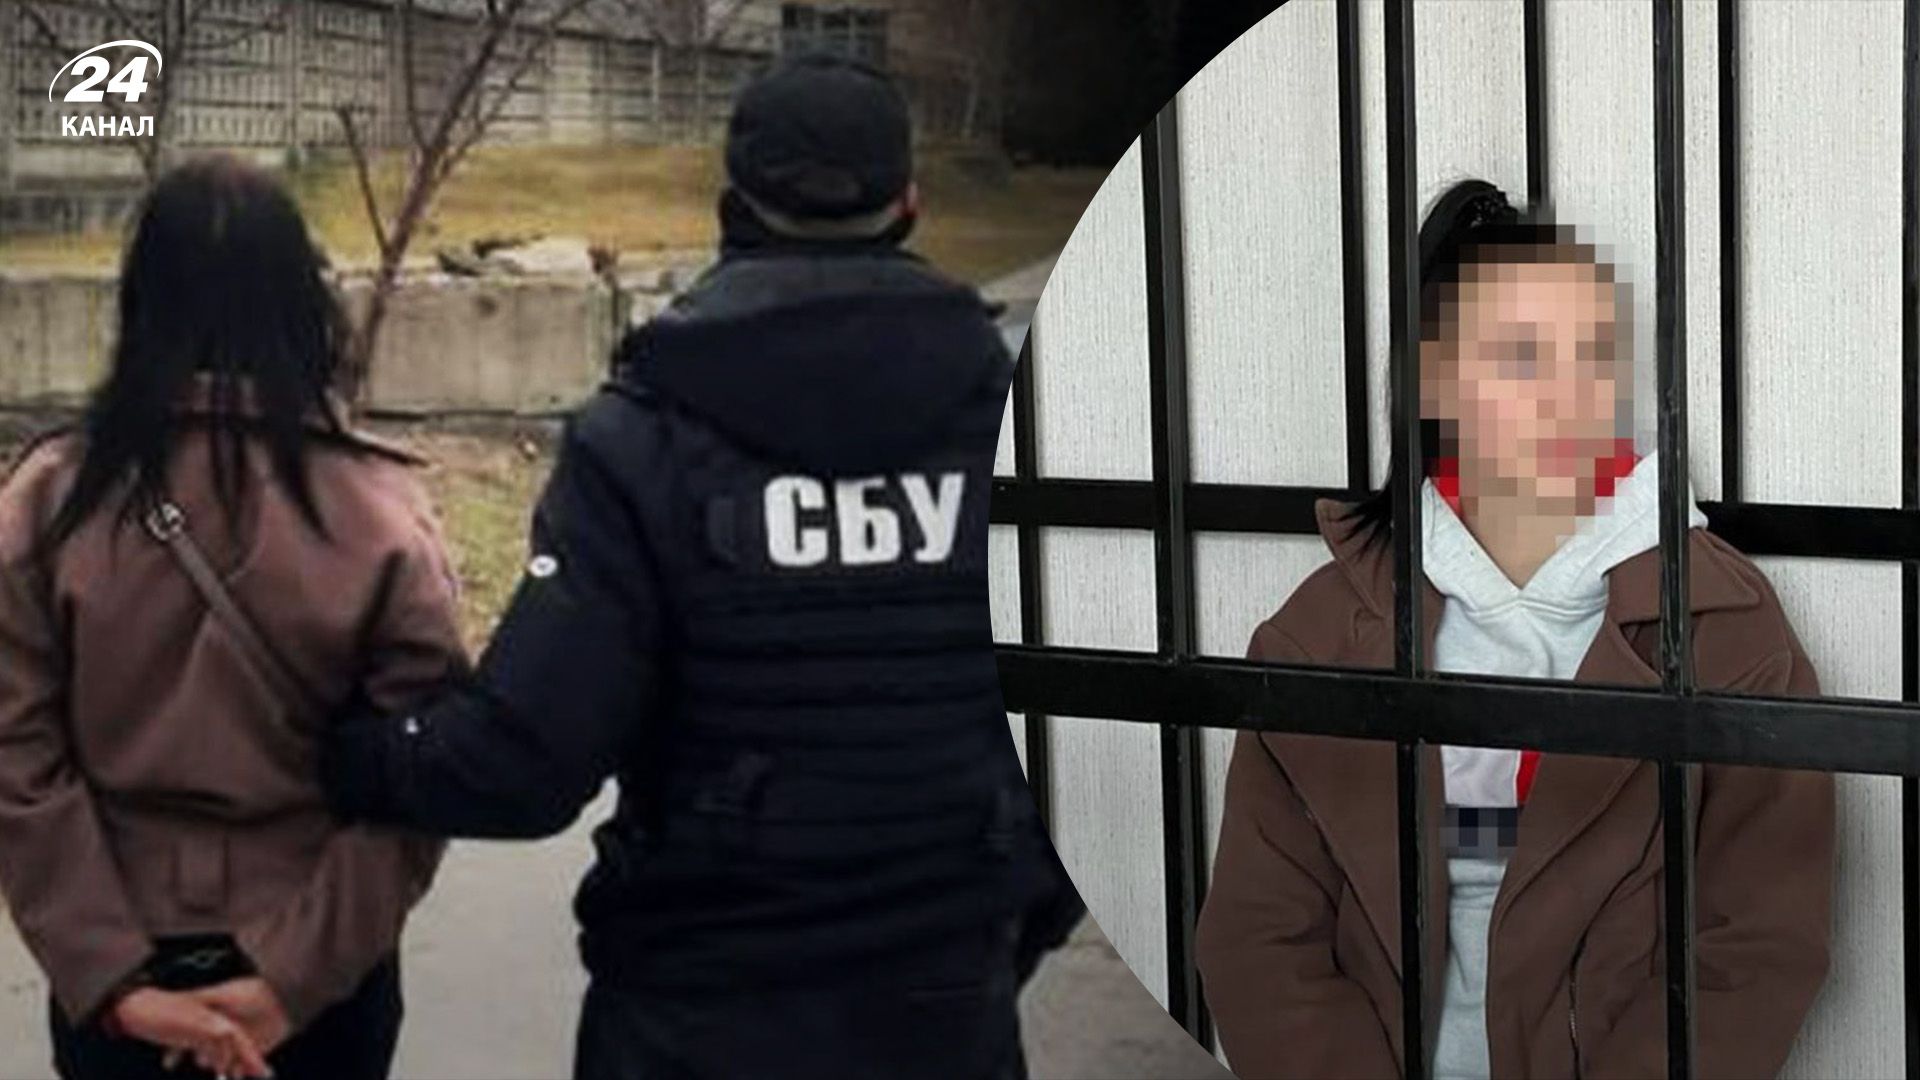 22-річну дівчину засудили до довічного ув'язнення - наводила ракети на Кіровоградщині - 24 Канал